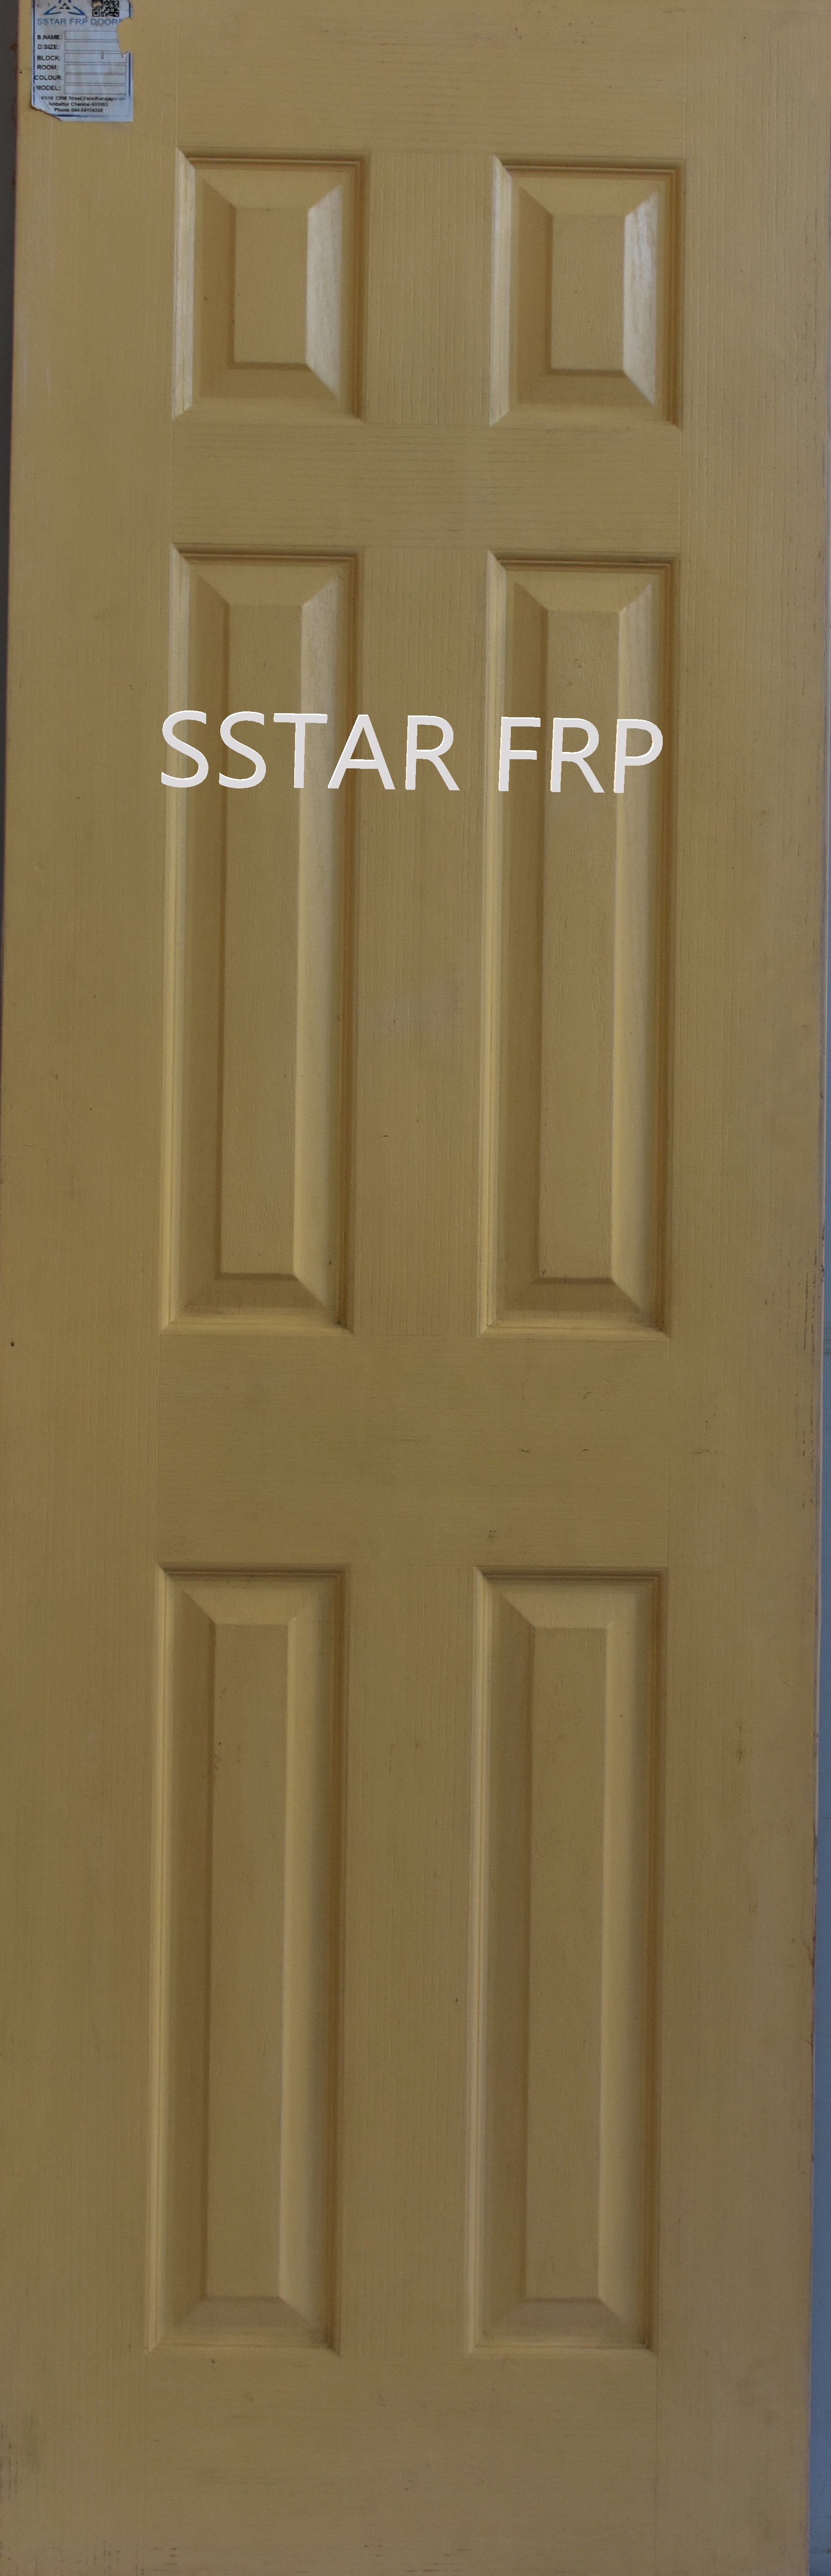 Frp Doors Six Panel Door(6PS-001)